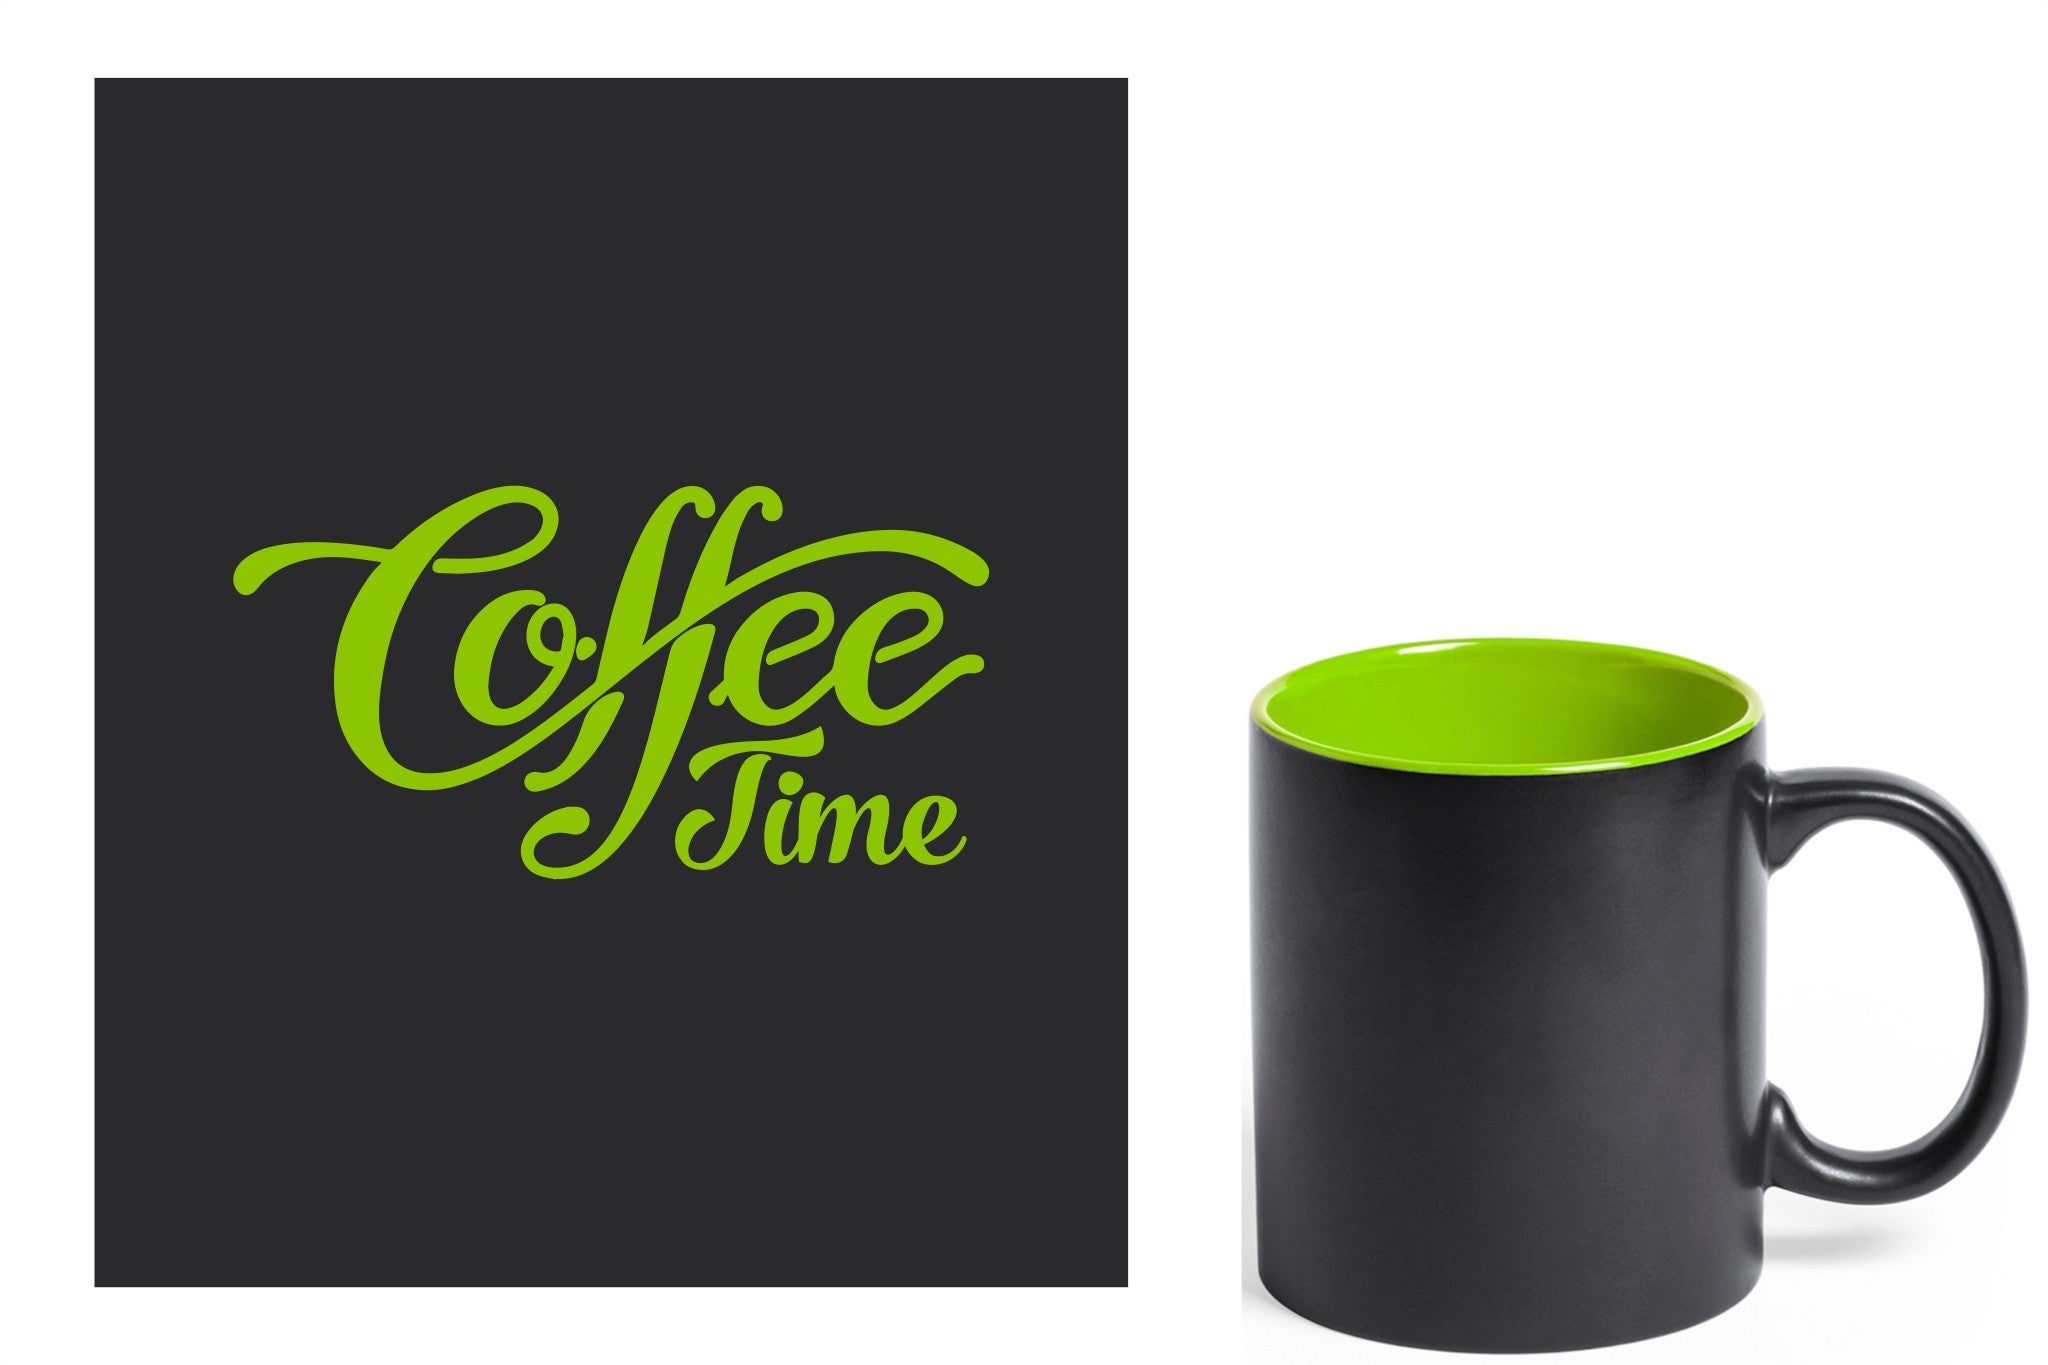 zwarte keramische mok met groene gravure  'Coffee time'.